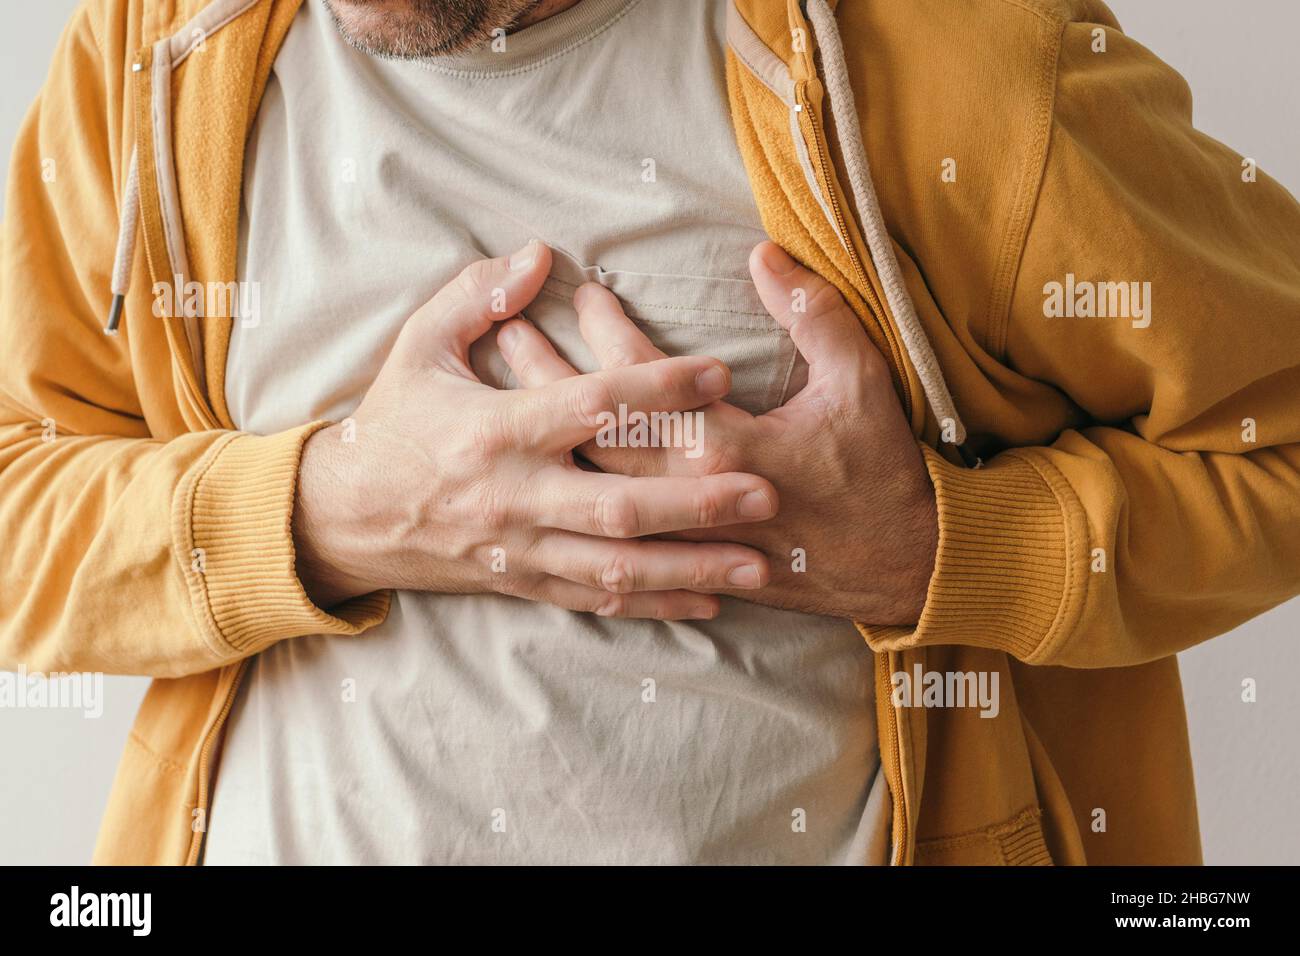 Schmerzende Herz-und Herzinfarkt, erwachsenen Mann mit schmerzhafter Grimasse drücken den oberen Bauch mit seinen Händen, um Schmerzen zu lindern Stockfoto